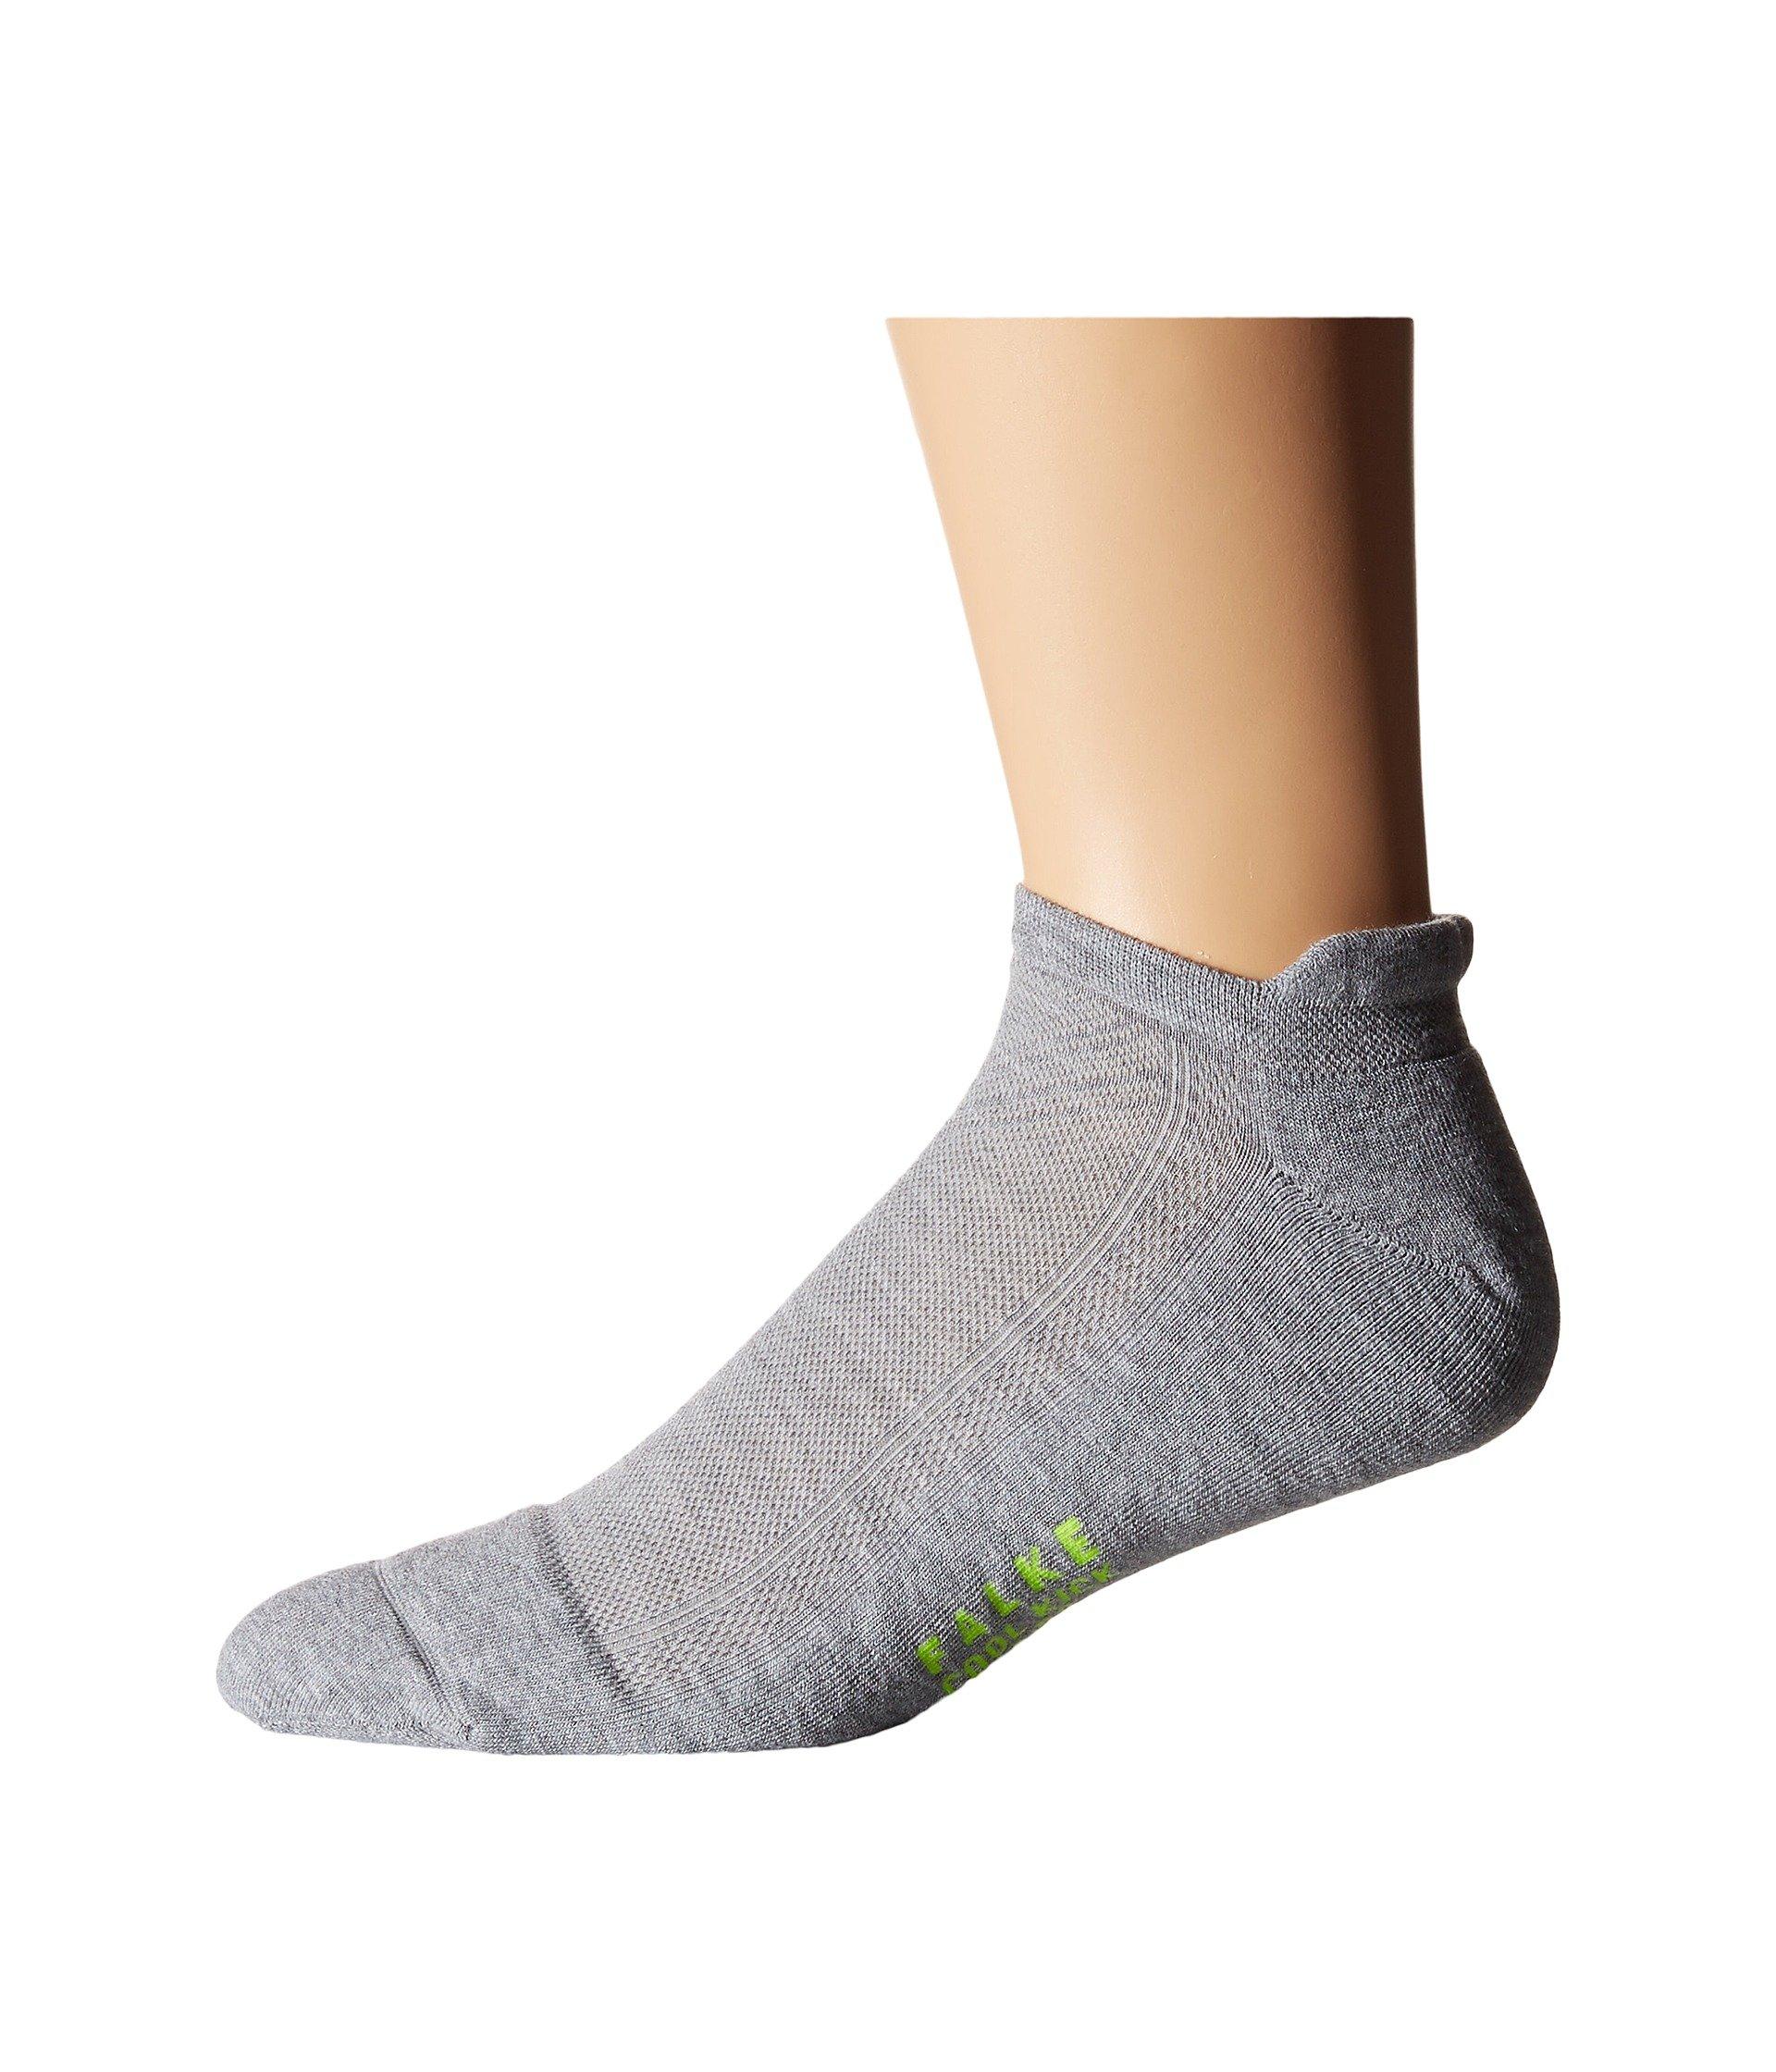 Falke Synthetic Cool Kick Sneaker Socks in Gray for Men - Lyst